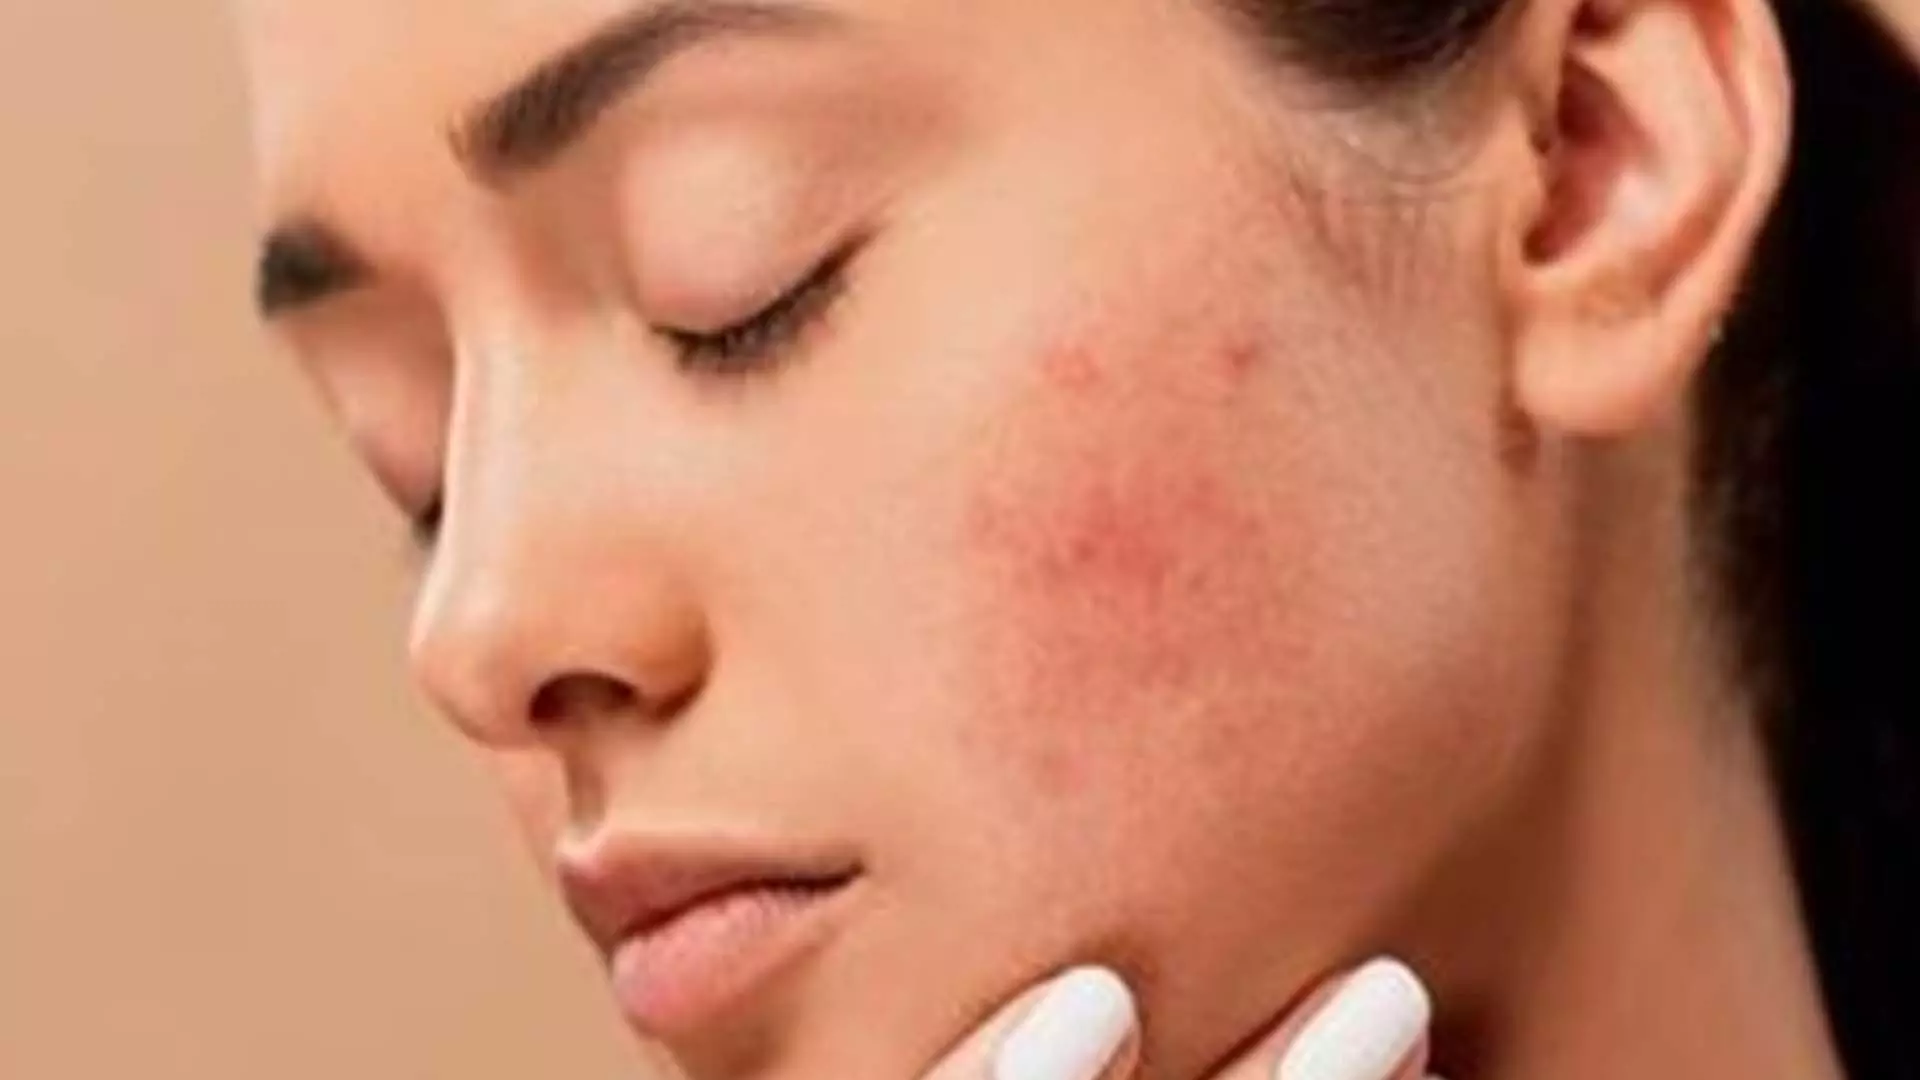 Pimples: पिम्पल्स खराब कर रहे आपके चहरे का लुक इन 10 तरीकों से करें इन्हें त्वचा से दूर